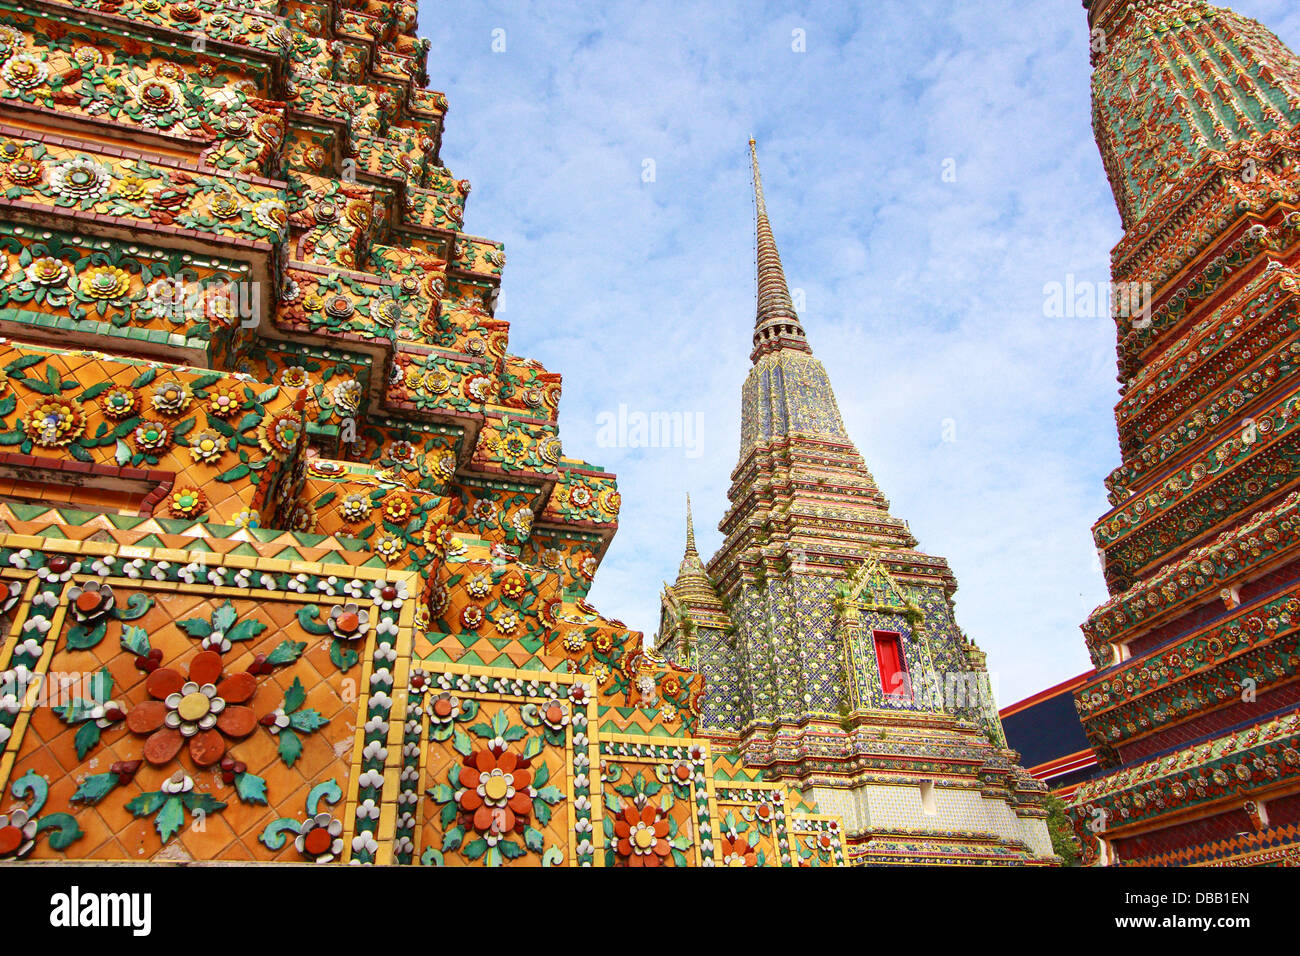 Wat Pho, en Bangkok, Tailandia. 'Wat' significa templo en tailandés. El templo es uno de los más famosos de Bangkok sitios turísticos. Foto de stock